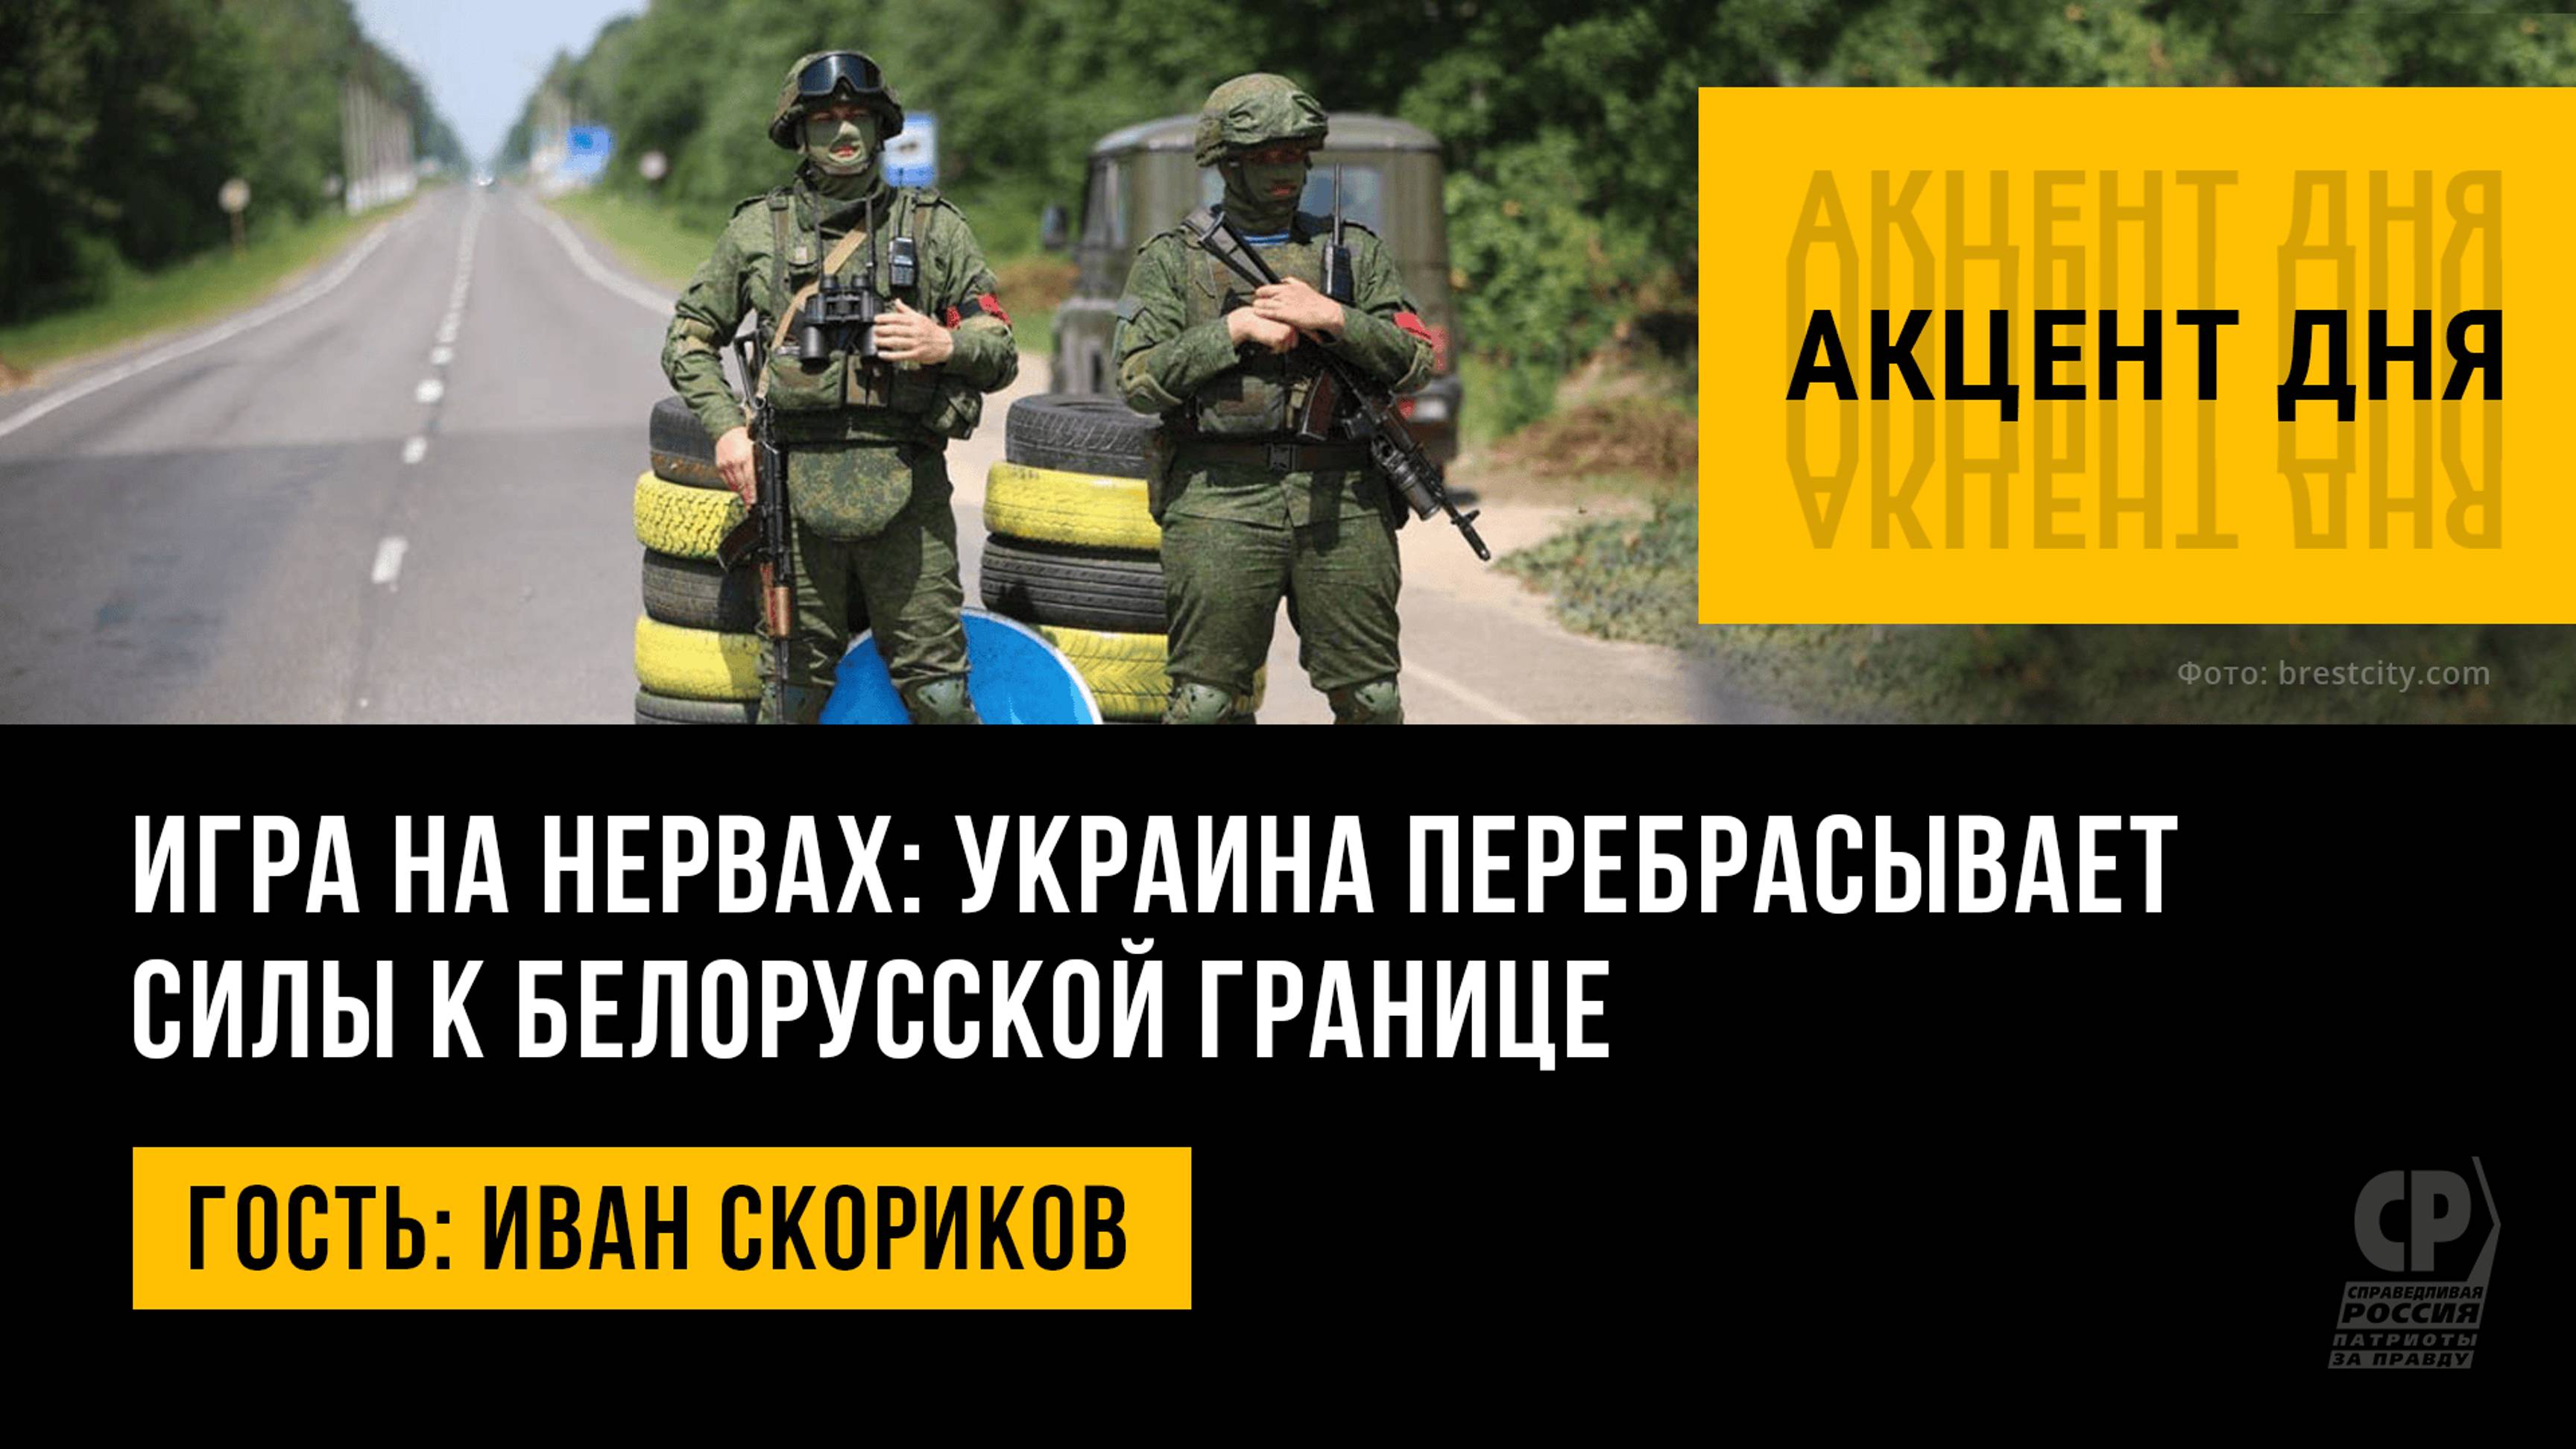 Игра на нервах: Украина перебрасывает силы к белорусской границе. Иван Скориков